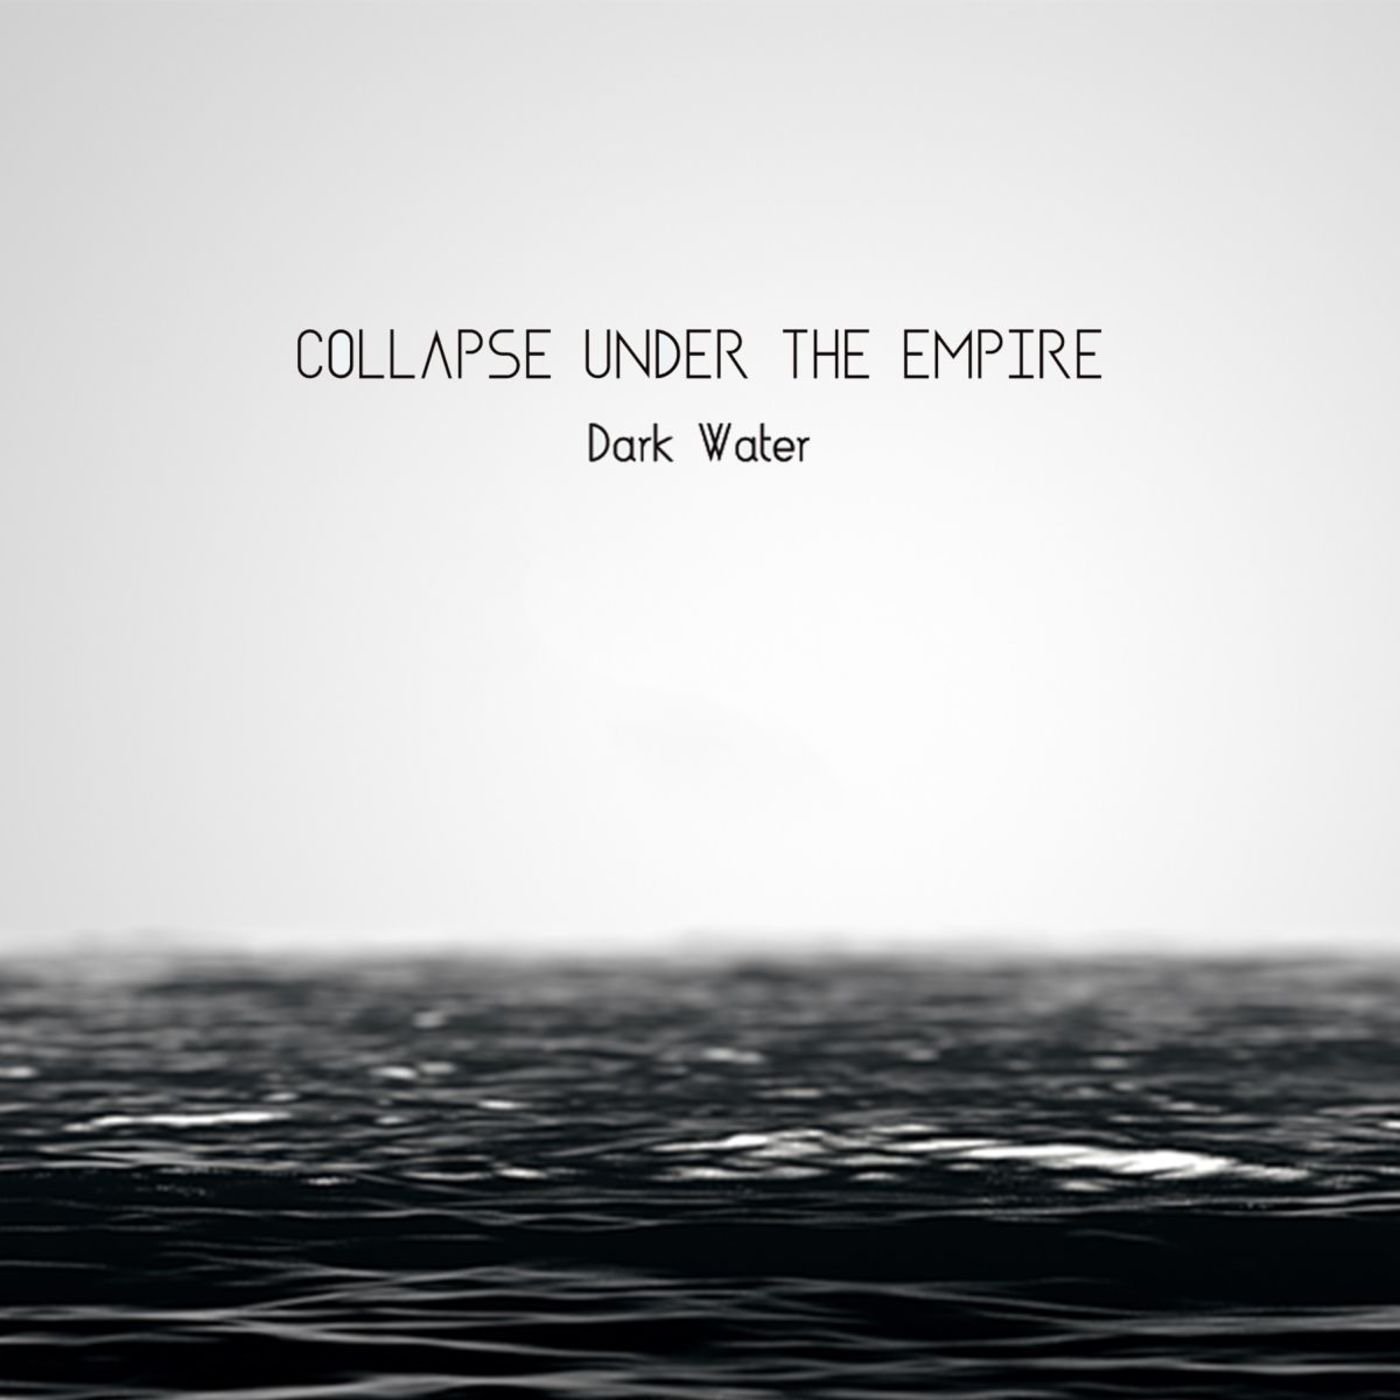 Слушать песни темная вода. Темная вода слова. Dark Waters first альбом. Картинка к альбому Collapse under the Empire. Темная вода песня.